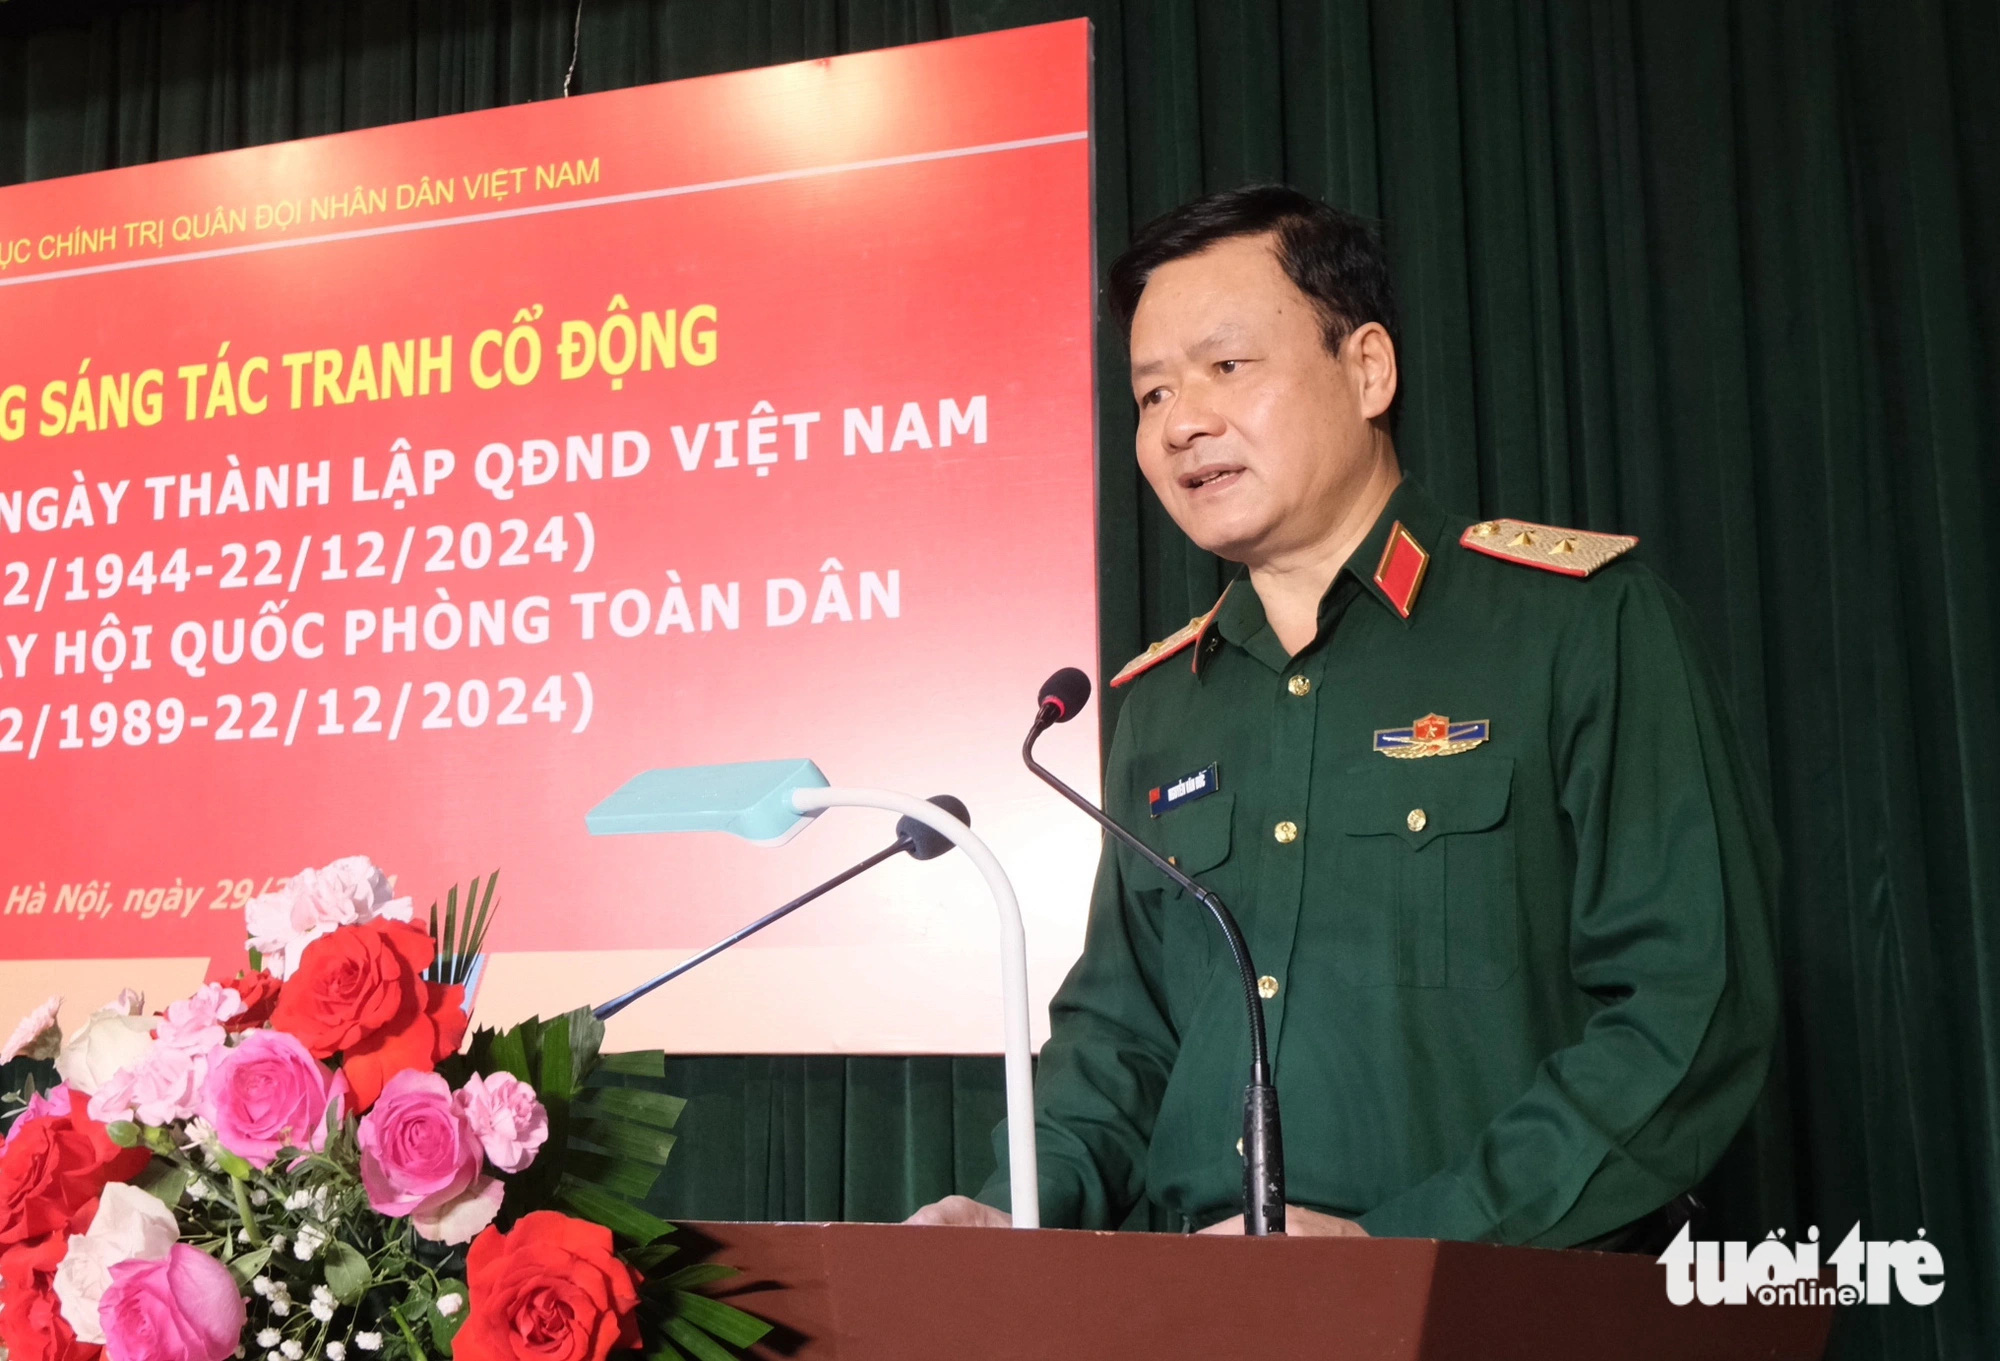 Tổng cục Chính trị Quân đội nhân dân Việt Nam phát động sáng tác tranh cổ động về Quân đội